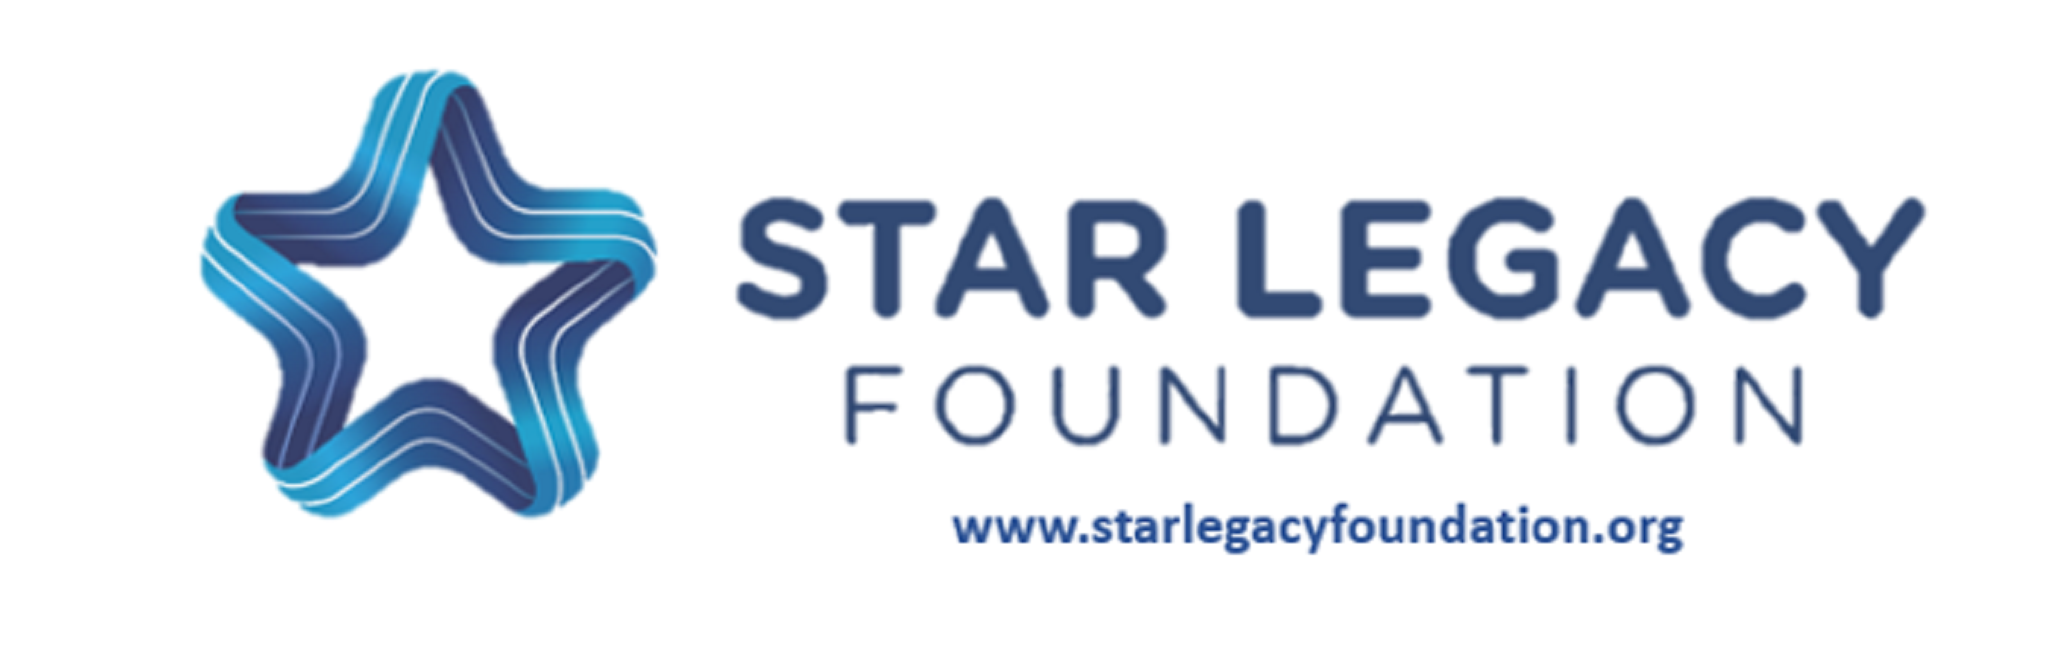 Star Legacy Foundation